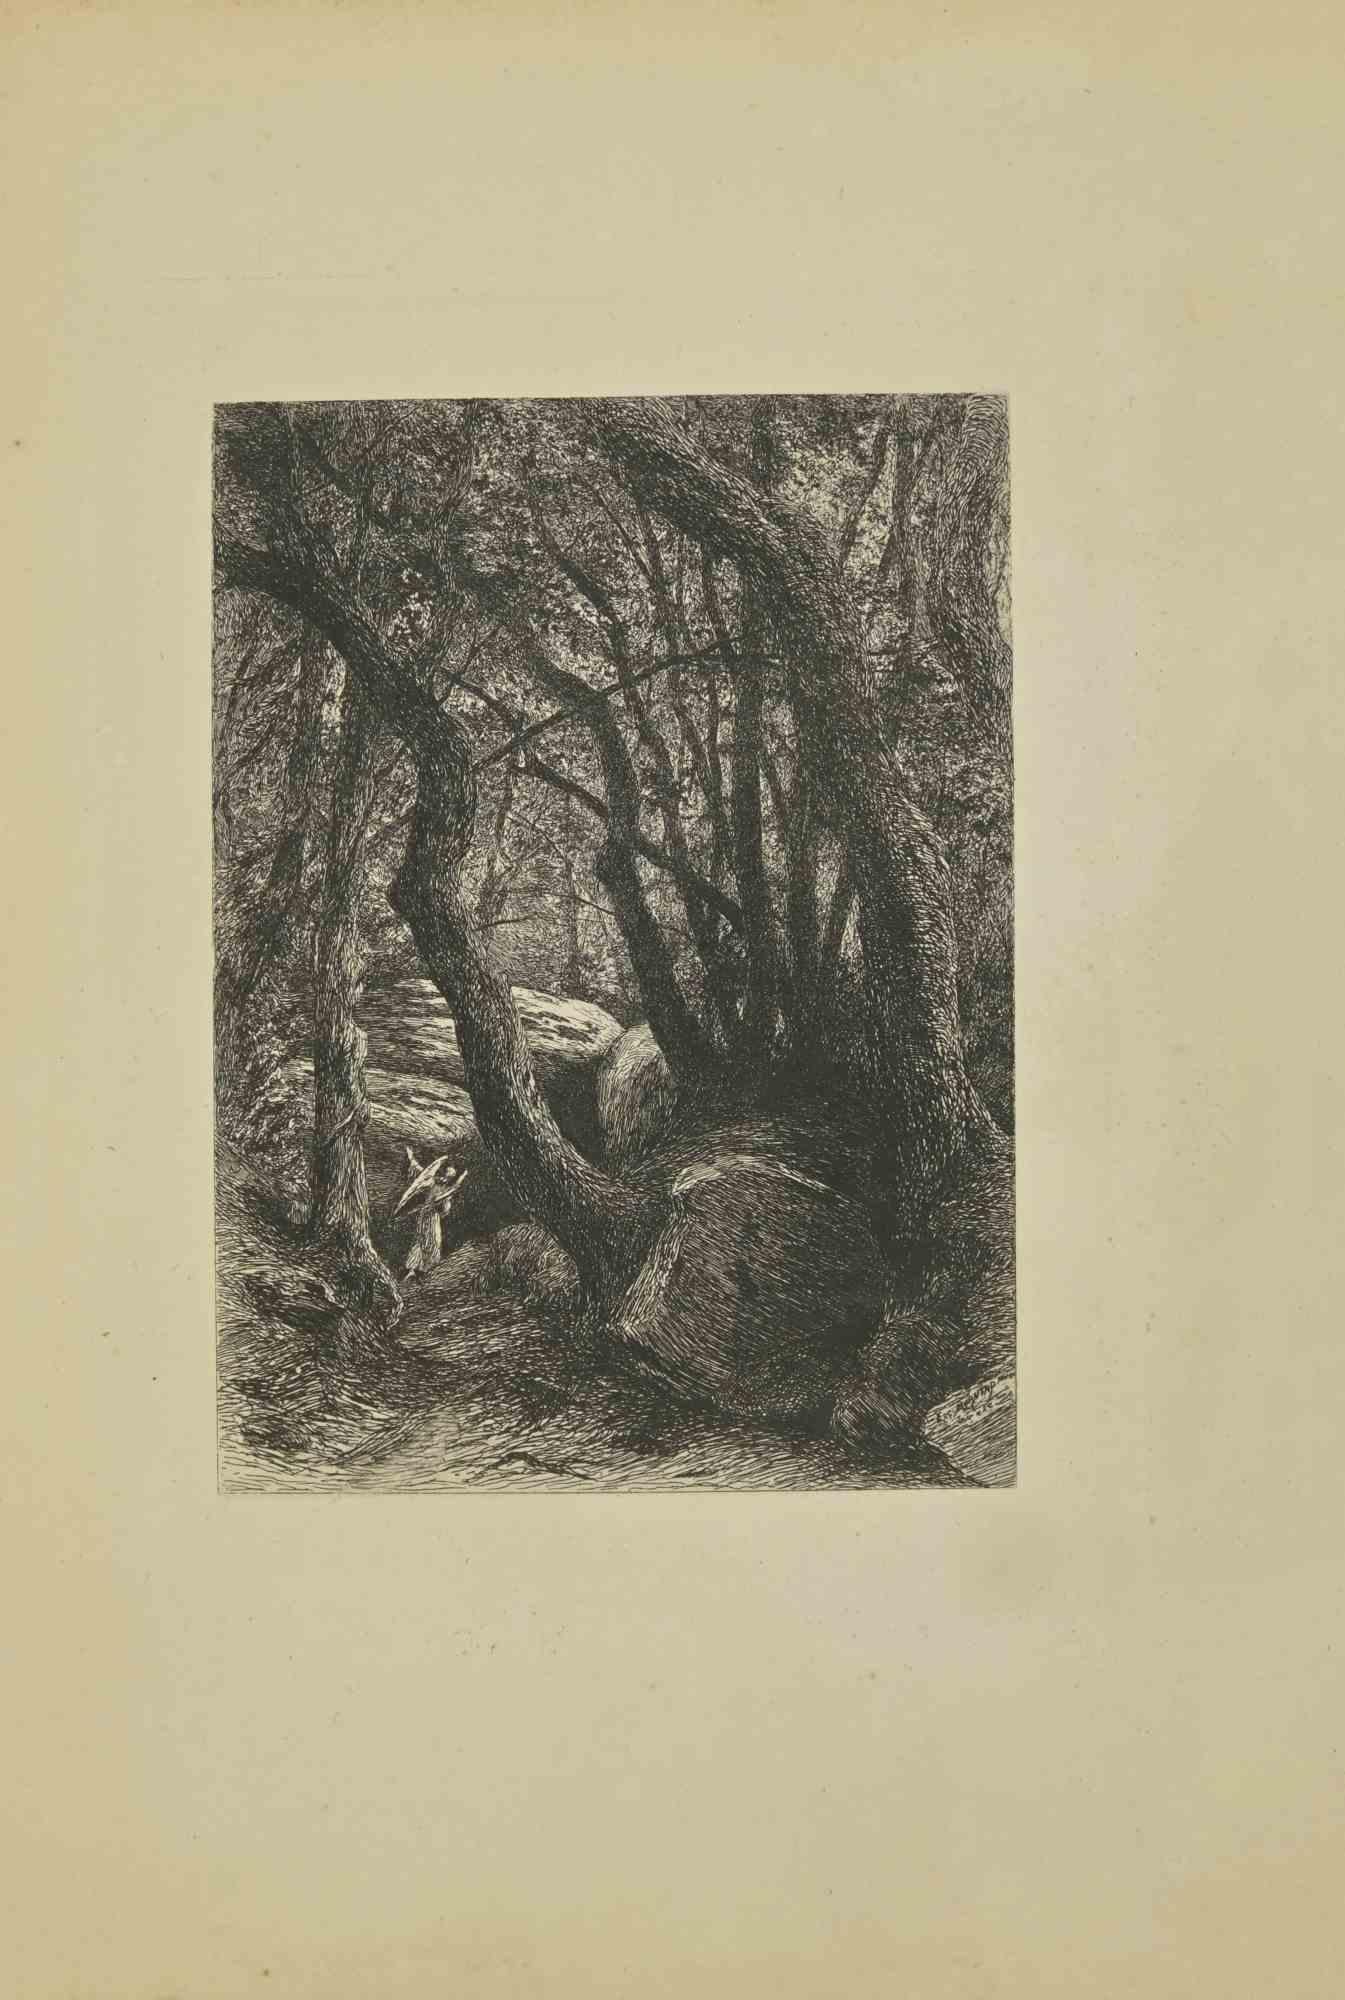 In The Forest est une gravure réalisée par  Eugène Burnand (1850-1921) à la fin du XIXe siècle.

Bon état avec des rousseurs.

L'œuvre est réalisée par des traits courts et habiles, une scène admirable créée par une maîtrise réaliste grâce à une